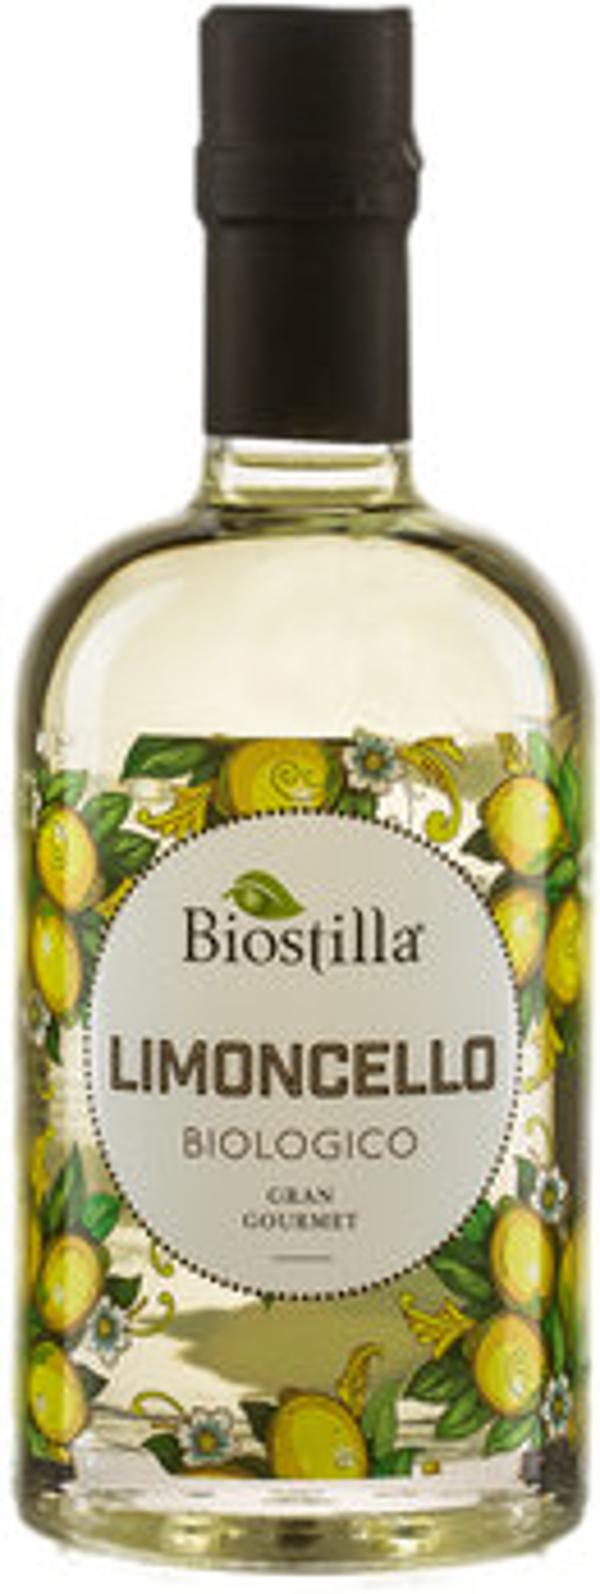 Produktfoto zu Limoncello, erfrischend lecker auf Eis oder als Sprizz